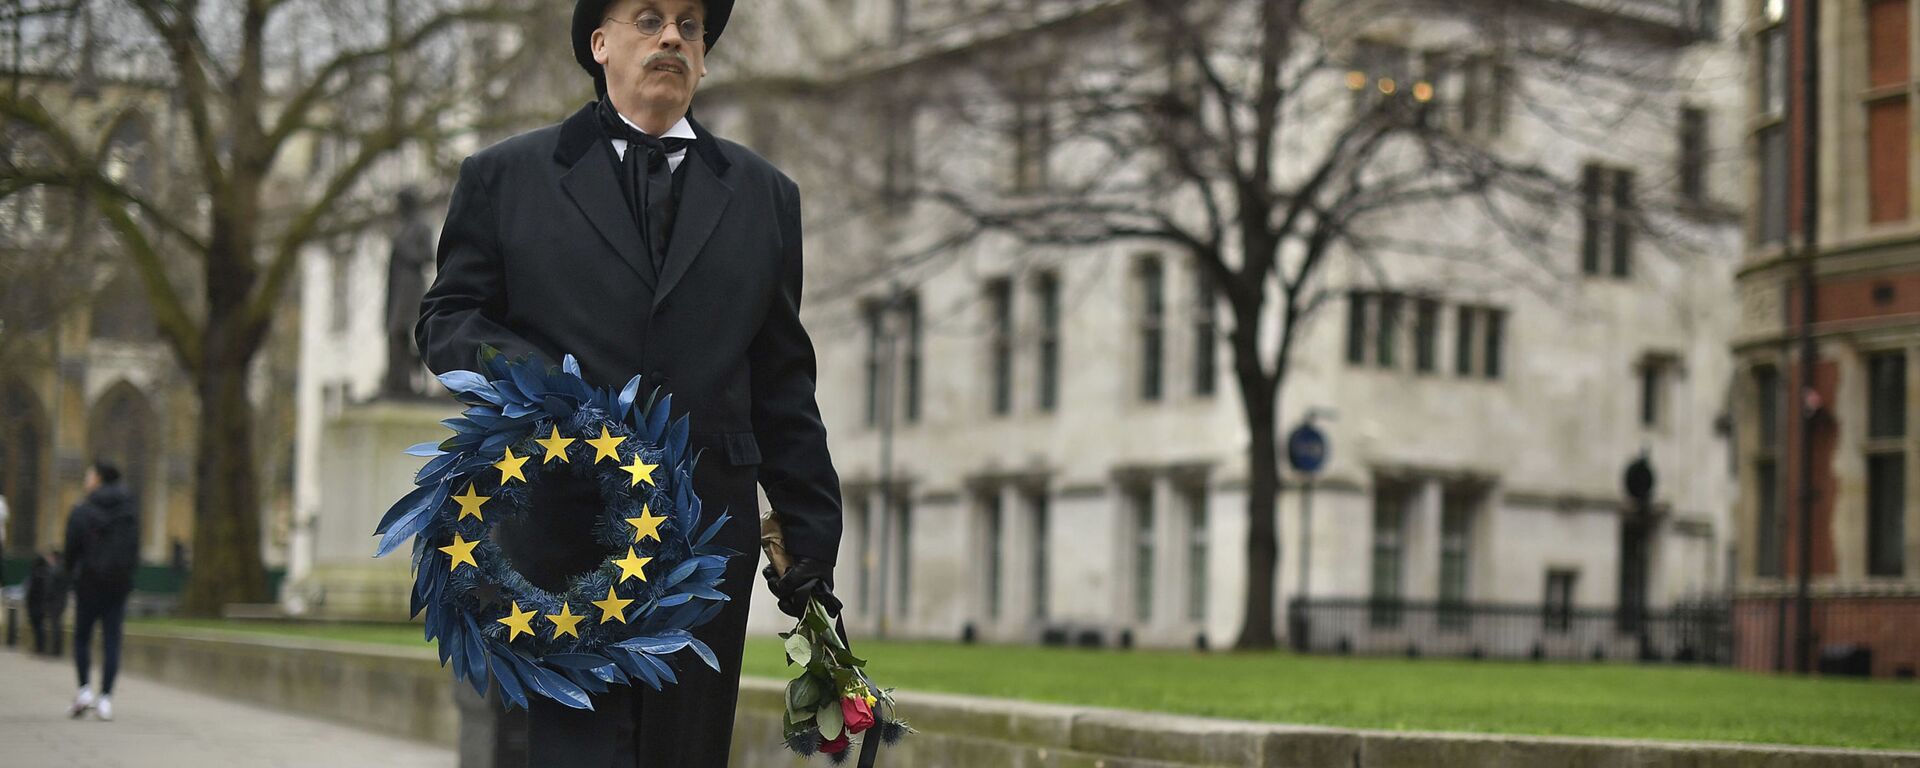 Човек обучен као гробар носи венац за заставом Европске уније у Лондону уочи брегзита. - Sputnik Србија, 1920, 05.03.2021